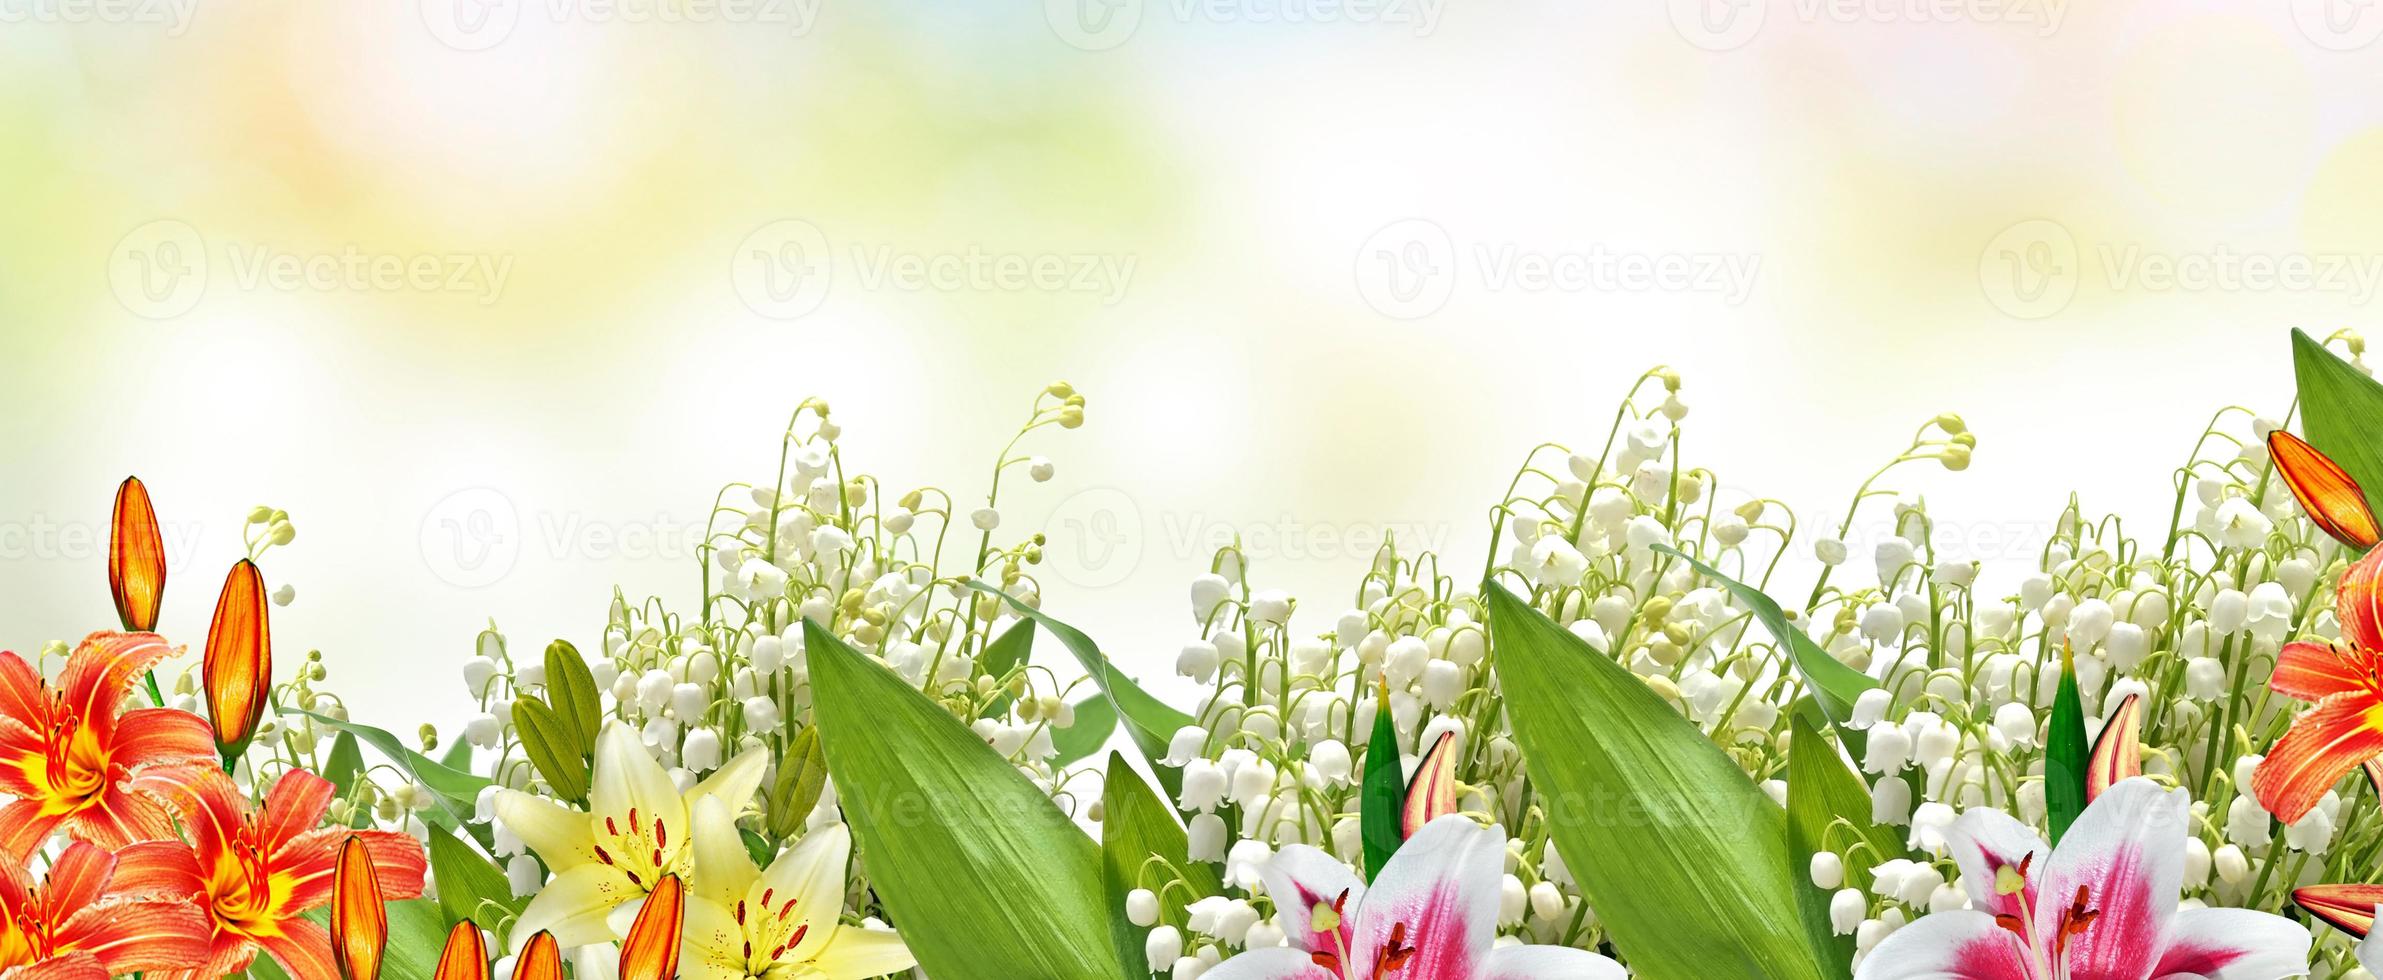 schöne Blumen Lilie und Maiglöckchen. Blumenhintergrund. foto